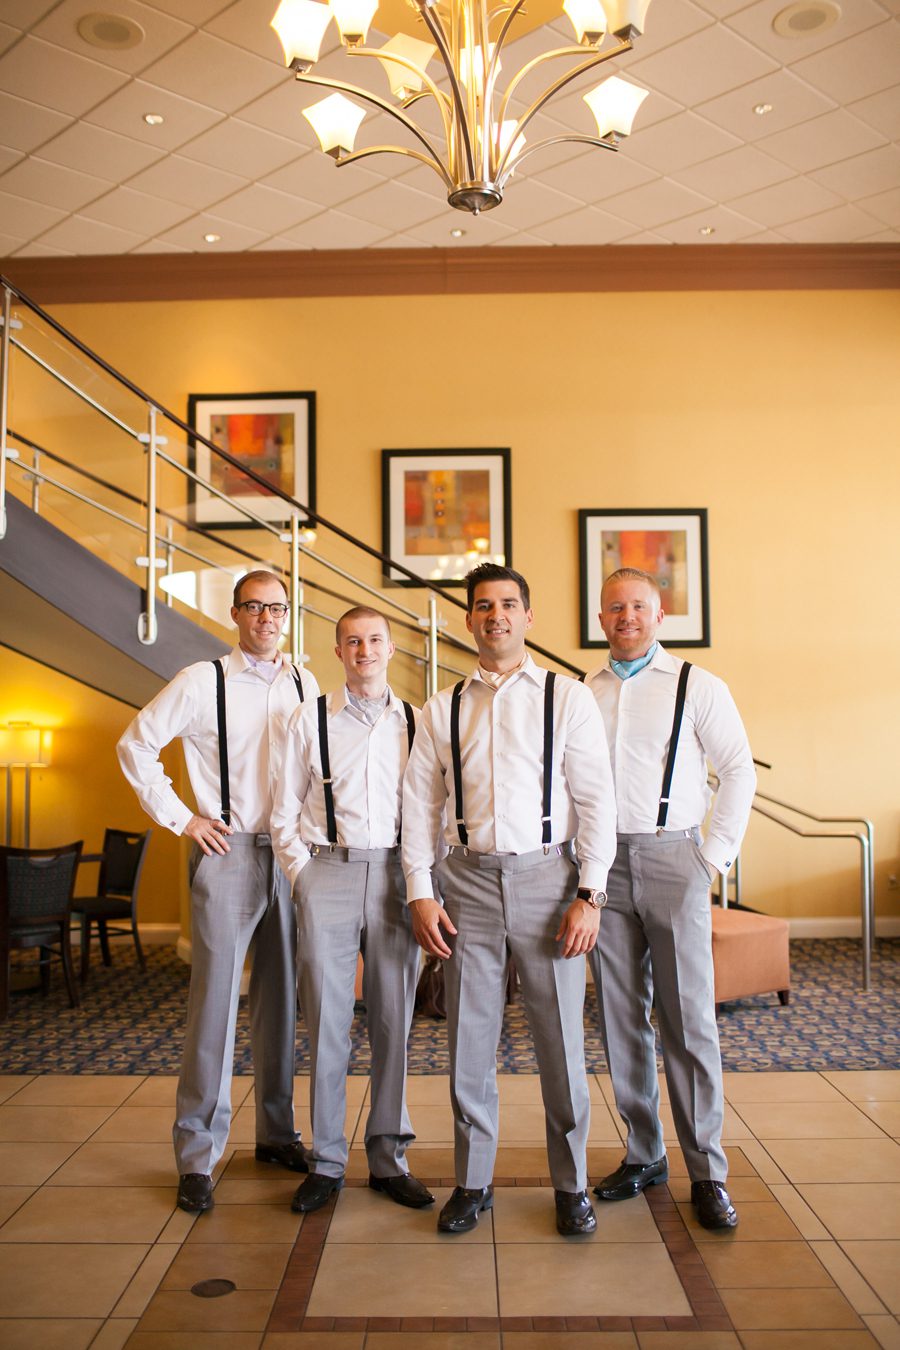 groomsmen in ascots - hotel lobby